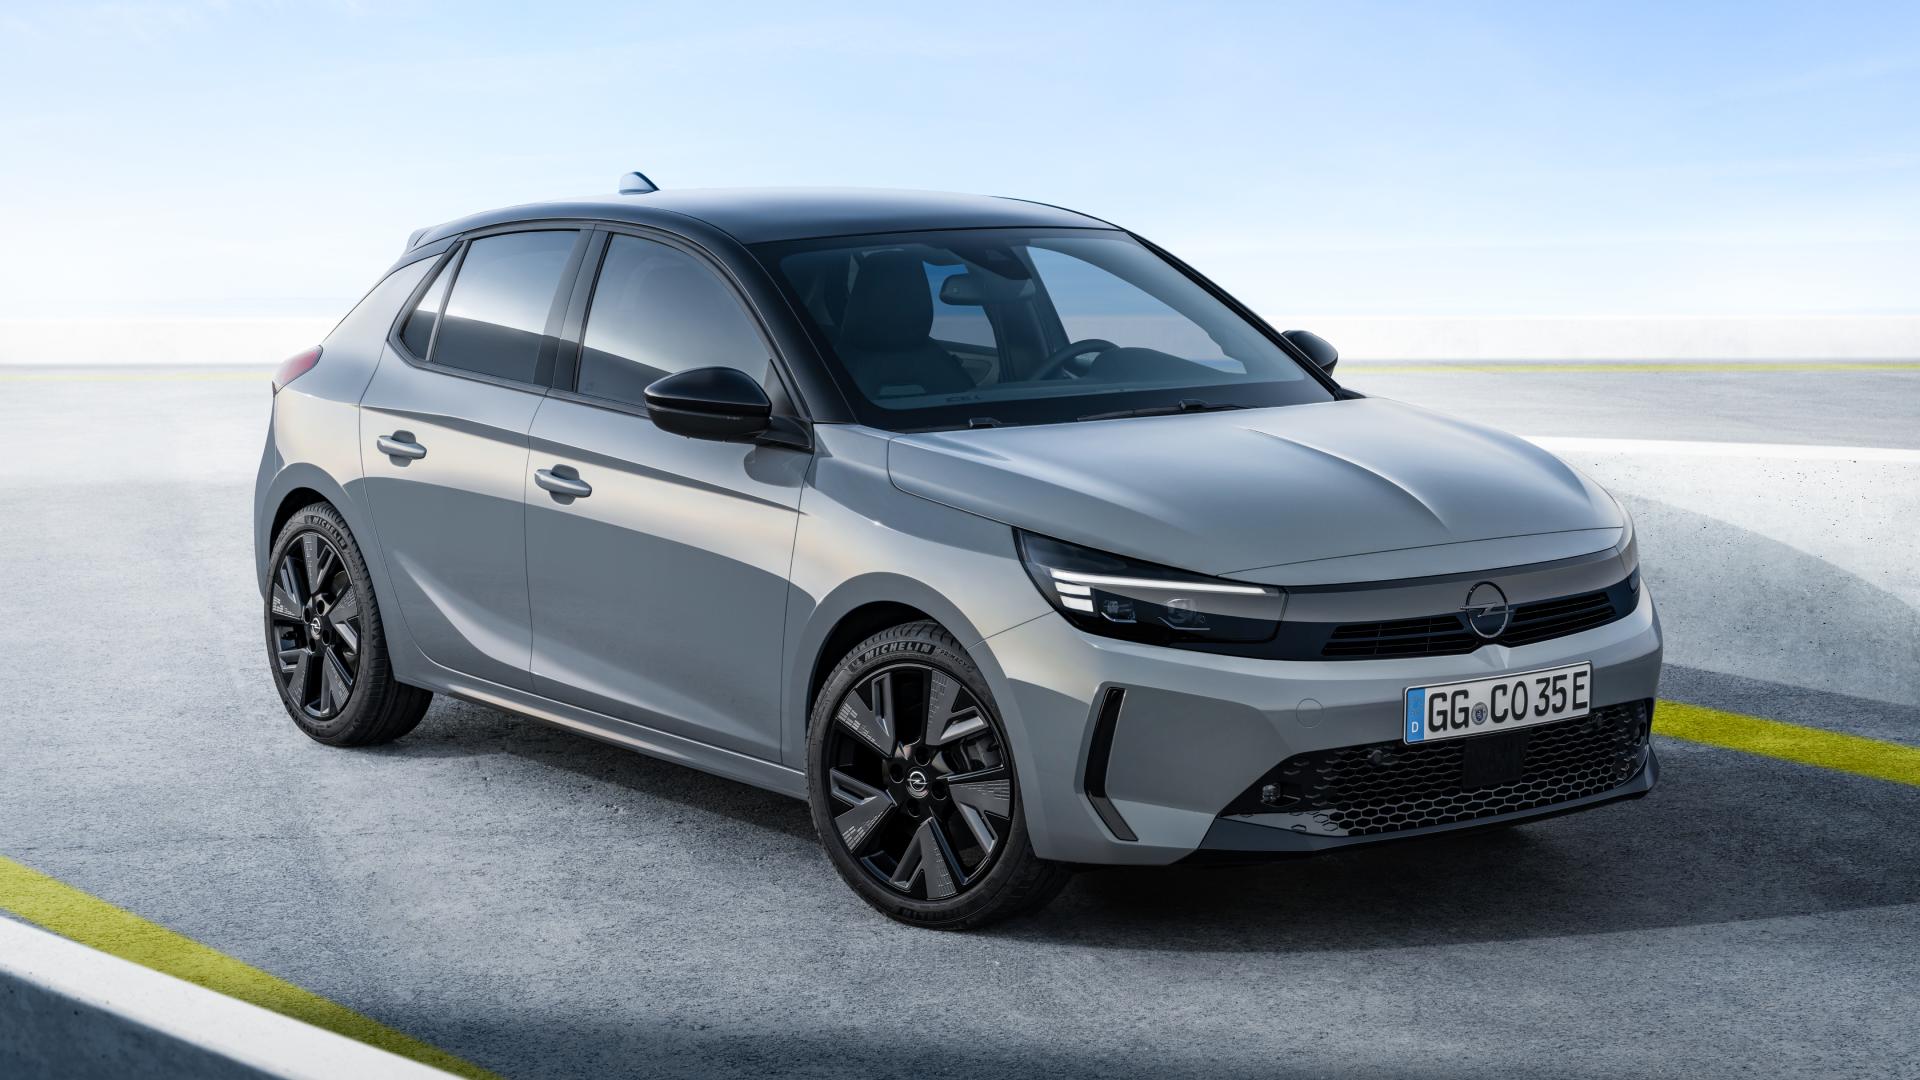 Citroën positionne sa C4 électrique à partir de 199 euros par mois